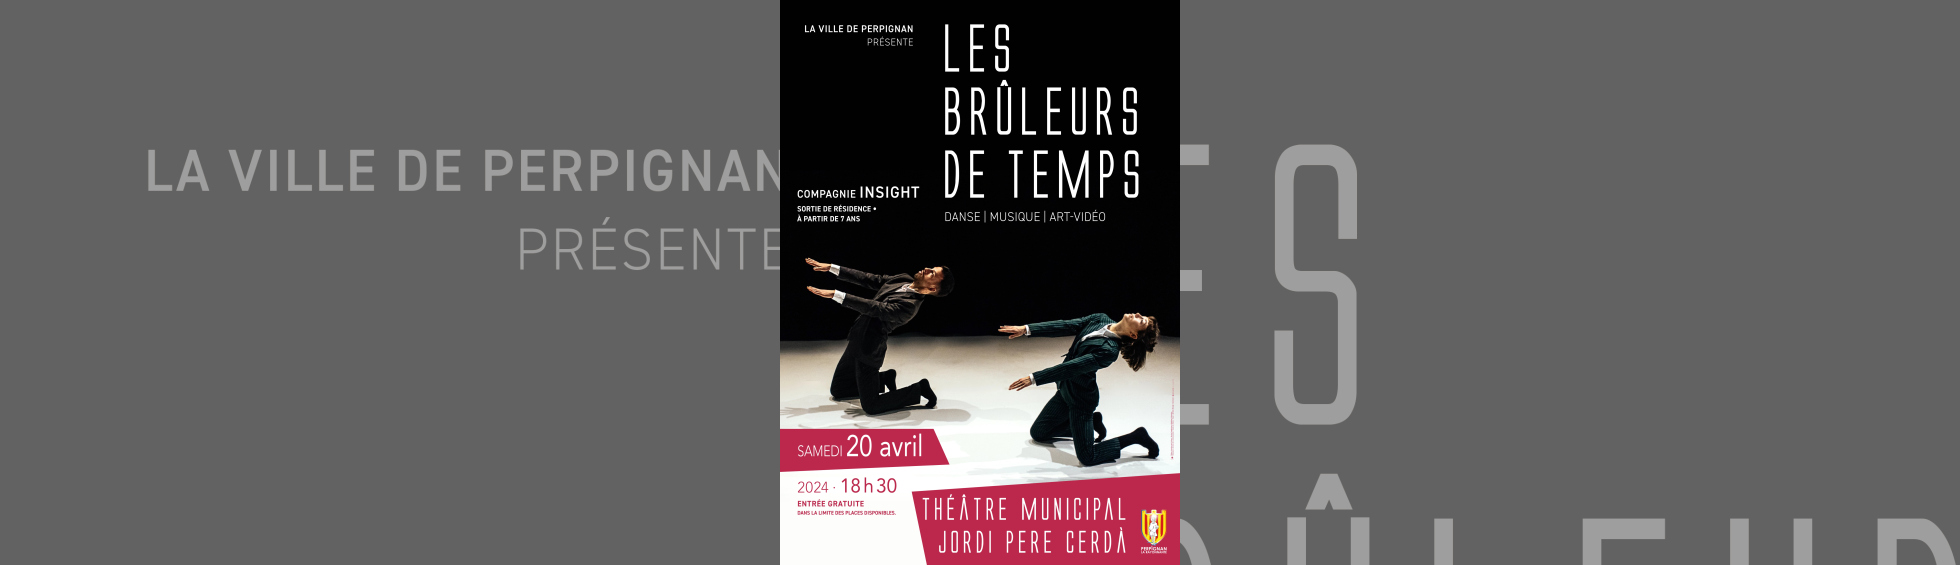 "Les Brûleurs de temps" par la compagnie Insight - affiche photo de deux danseurs sur la scène